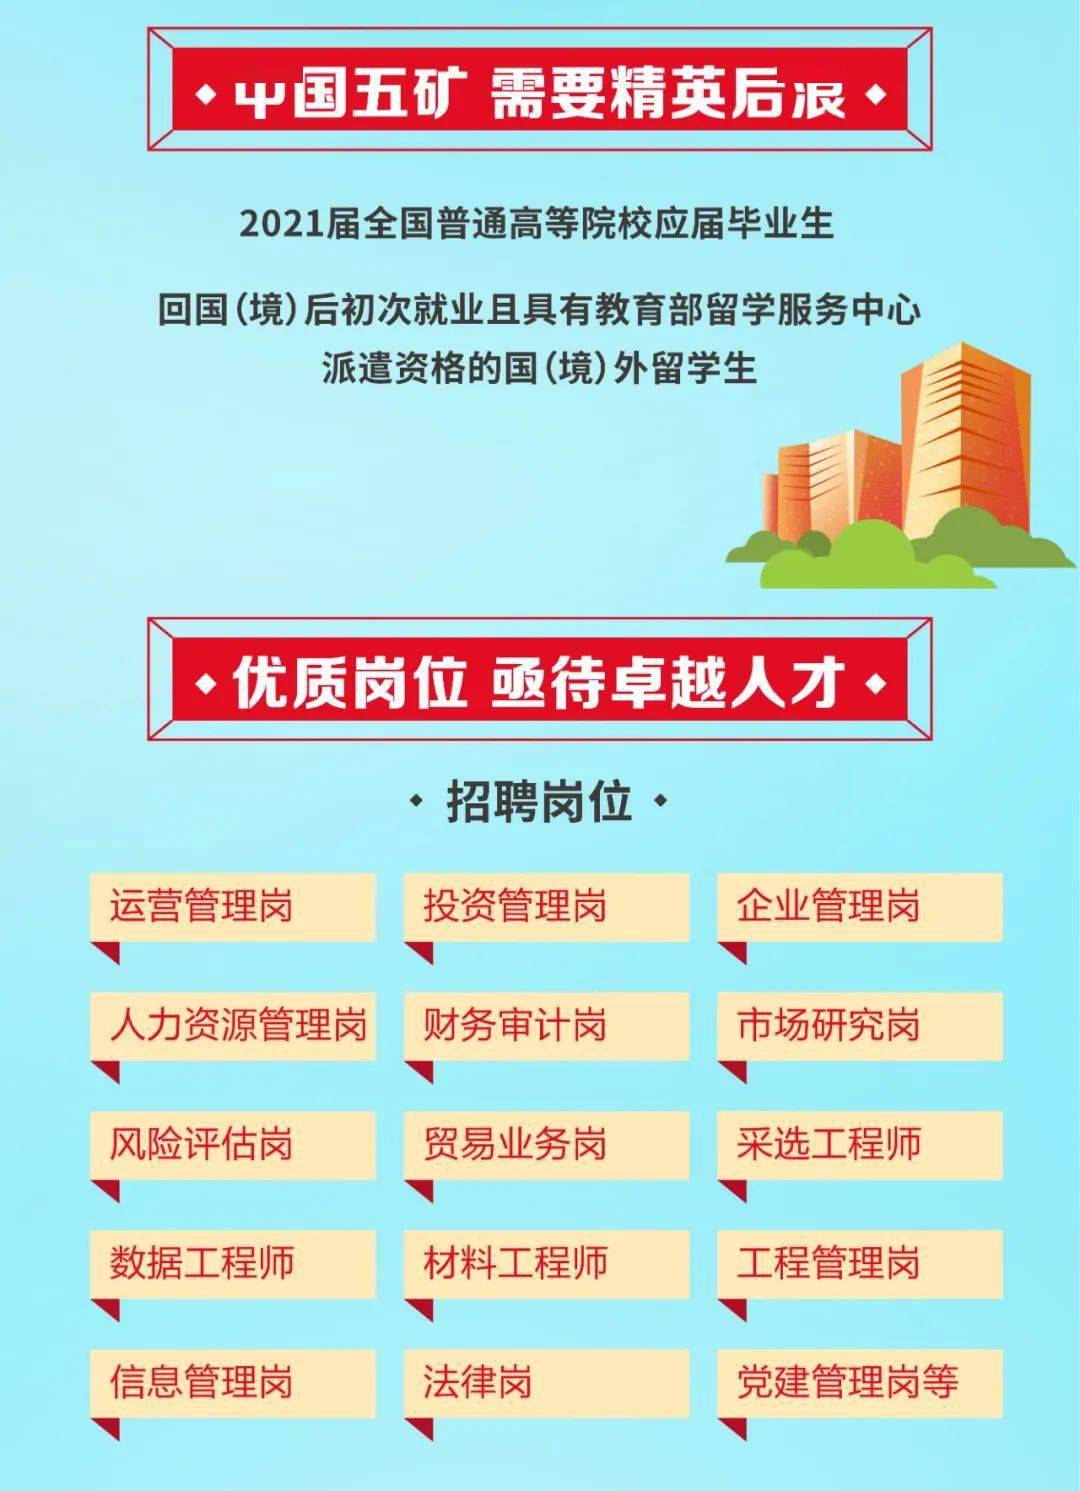 交大招聘_招募令 上海交通大学学生科学技术协会招新(4)